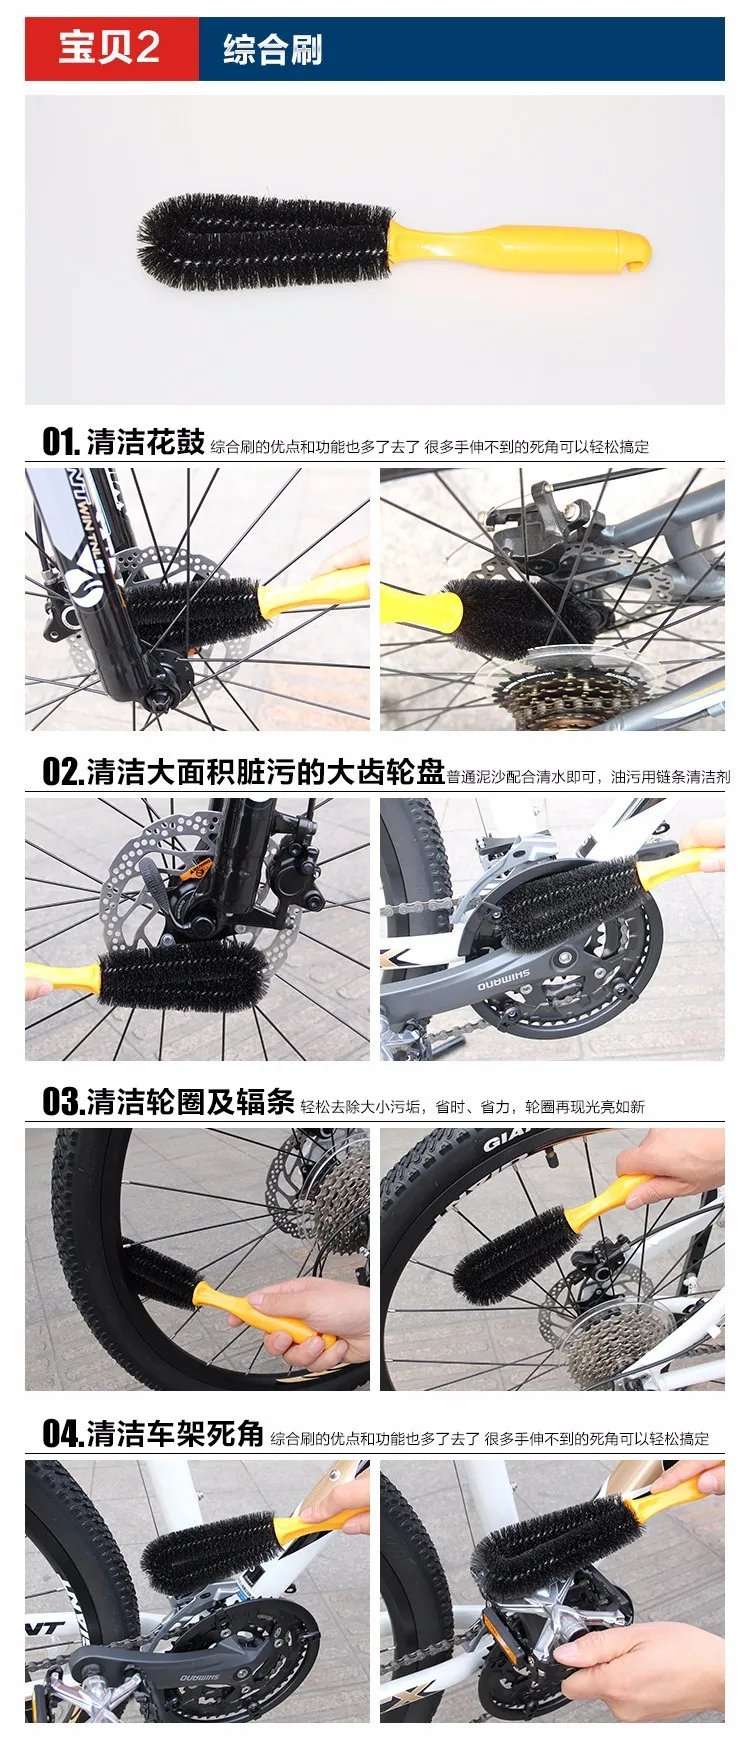 CYLION очистка велосипеда Наборы инструмент для чистки велосипеда упаковка велосипедная щетка для шин цепь для дорожного велосипеда мойка тормозной очиститель дисков набор инструментов